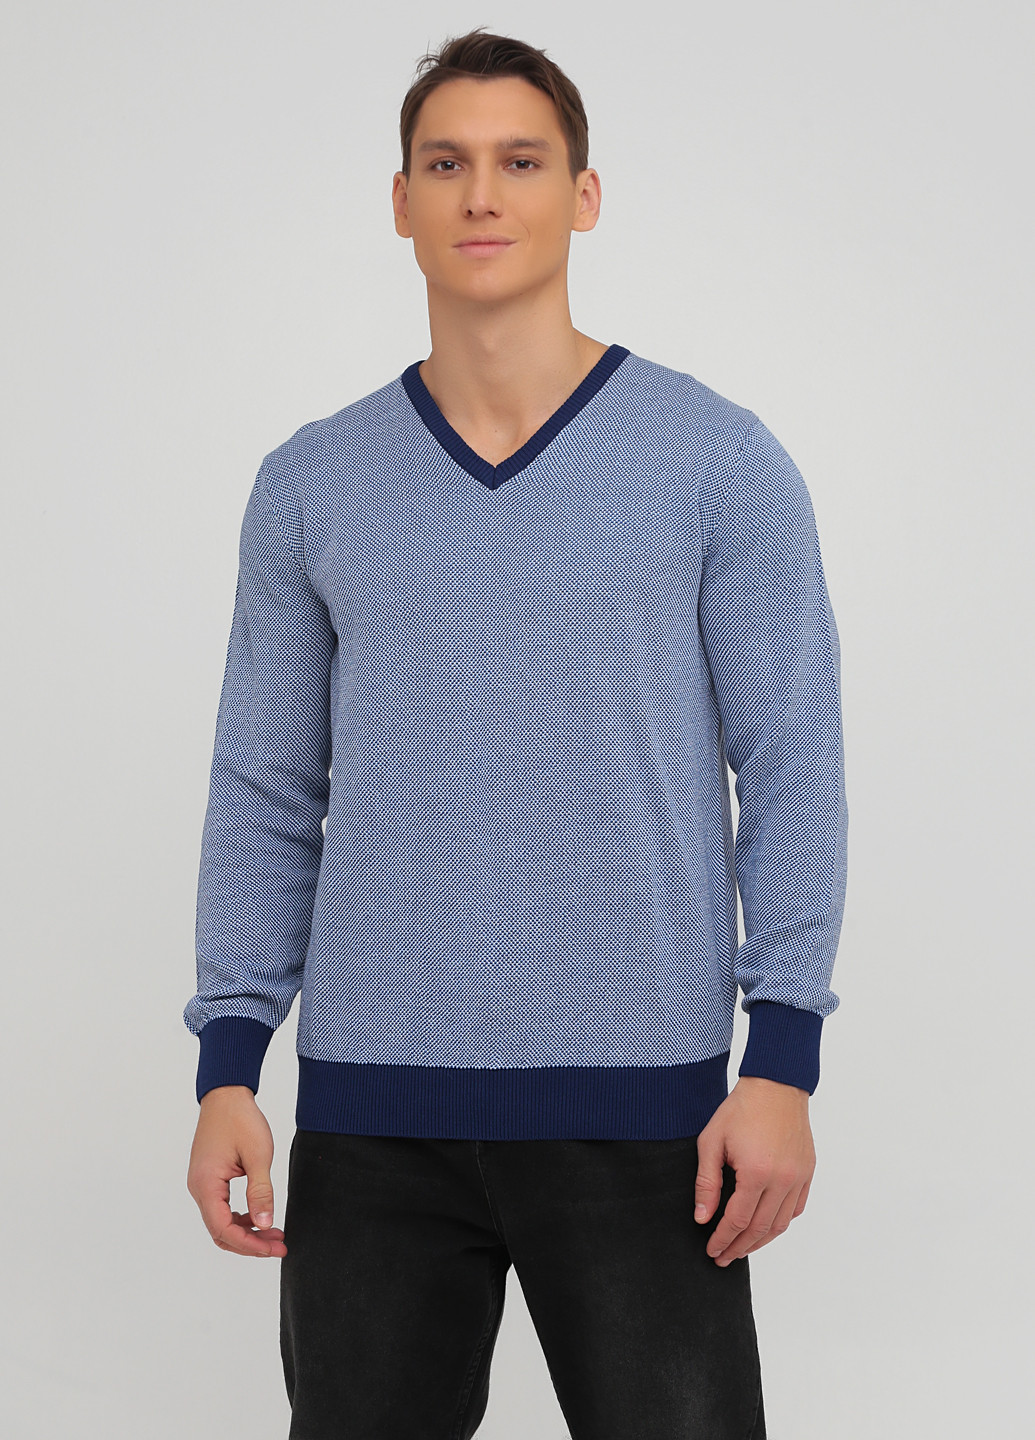 Синий демисезонный пуловер пуловер Ferrari